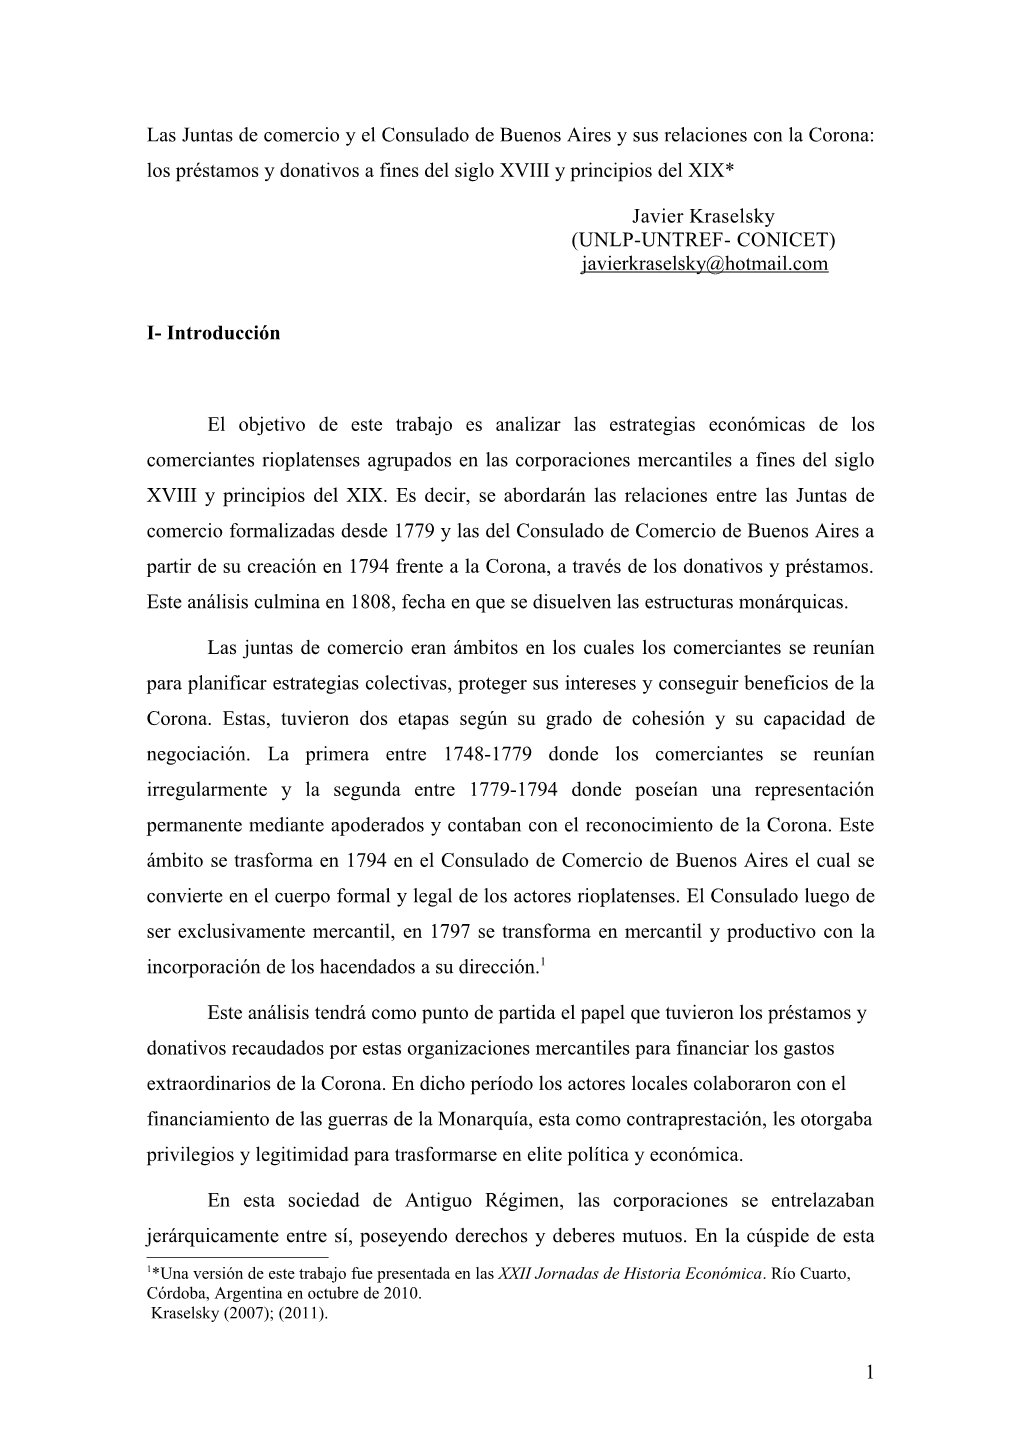 El Consulado De Comercio De Buenos Aires Y Sus Relaciones Con La Corona